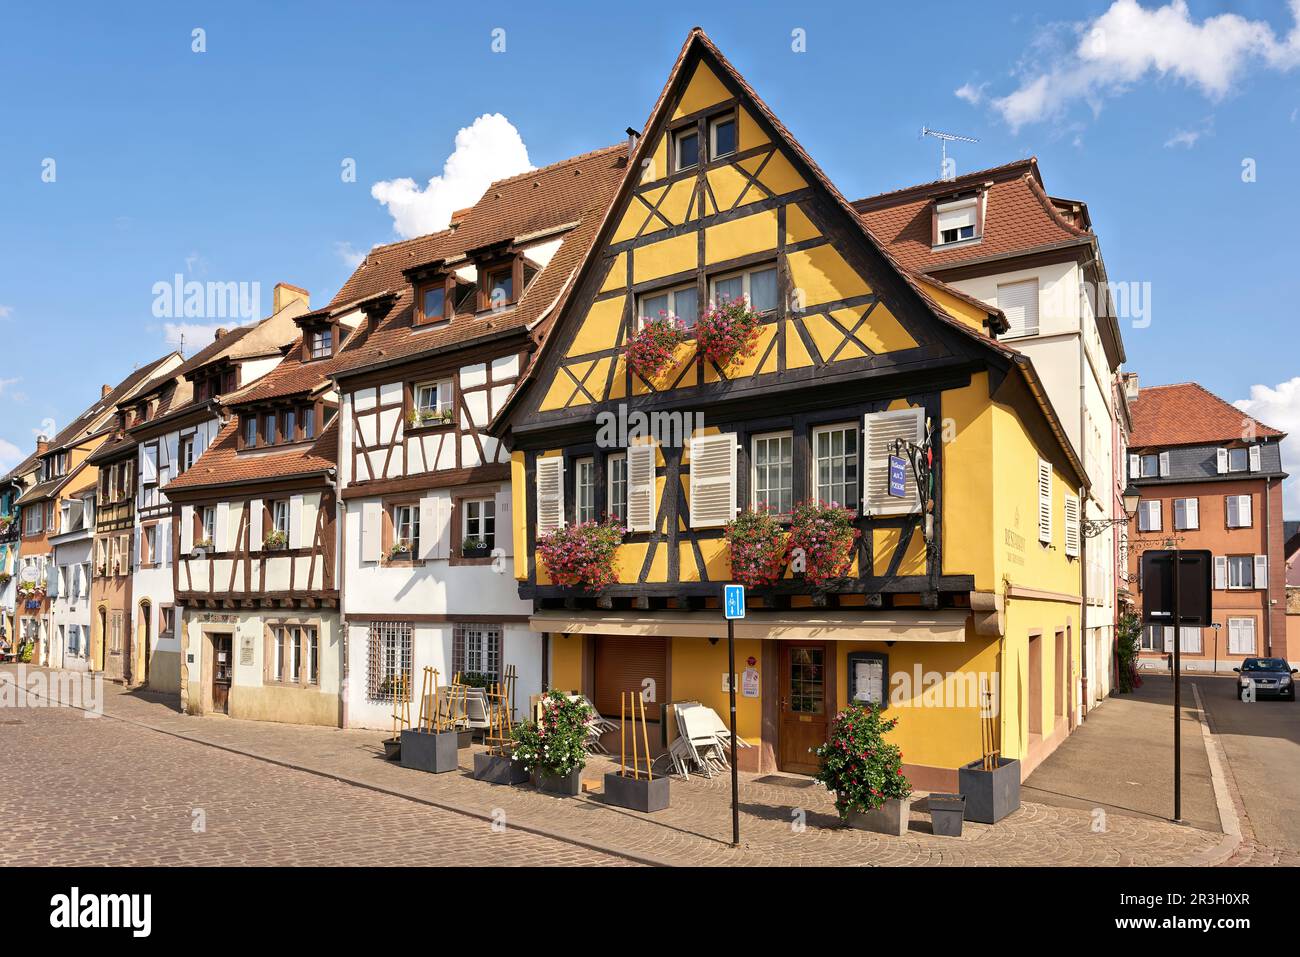 Maisons historiques à colombages dans la vieille ville médiévale pittoresque de Colmar en France Banque D'Images